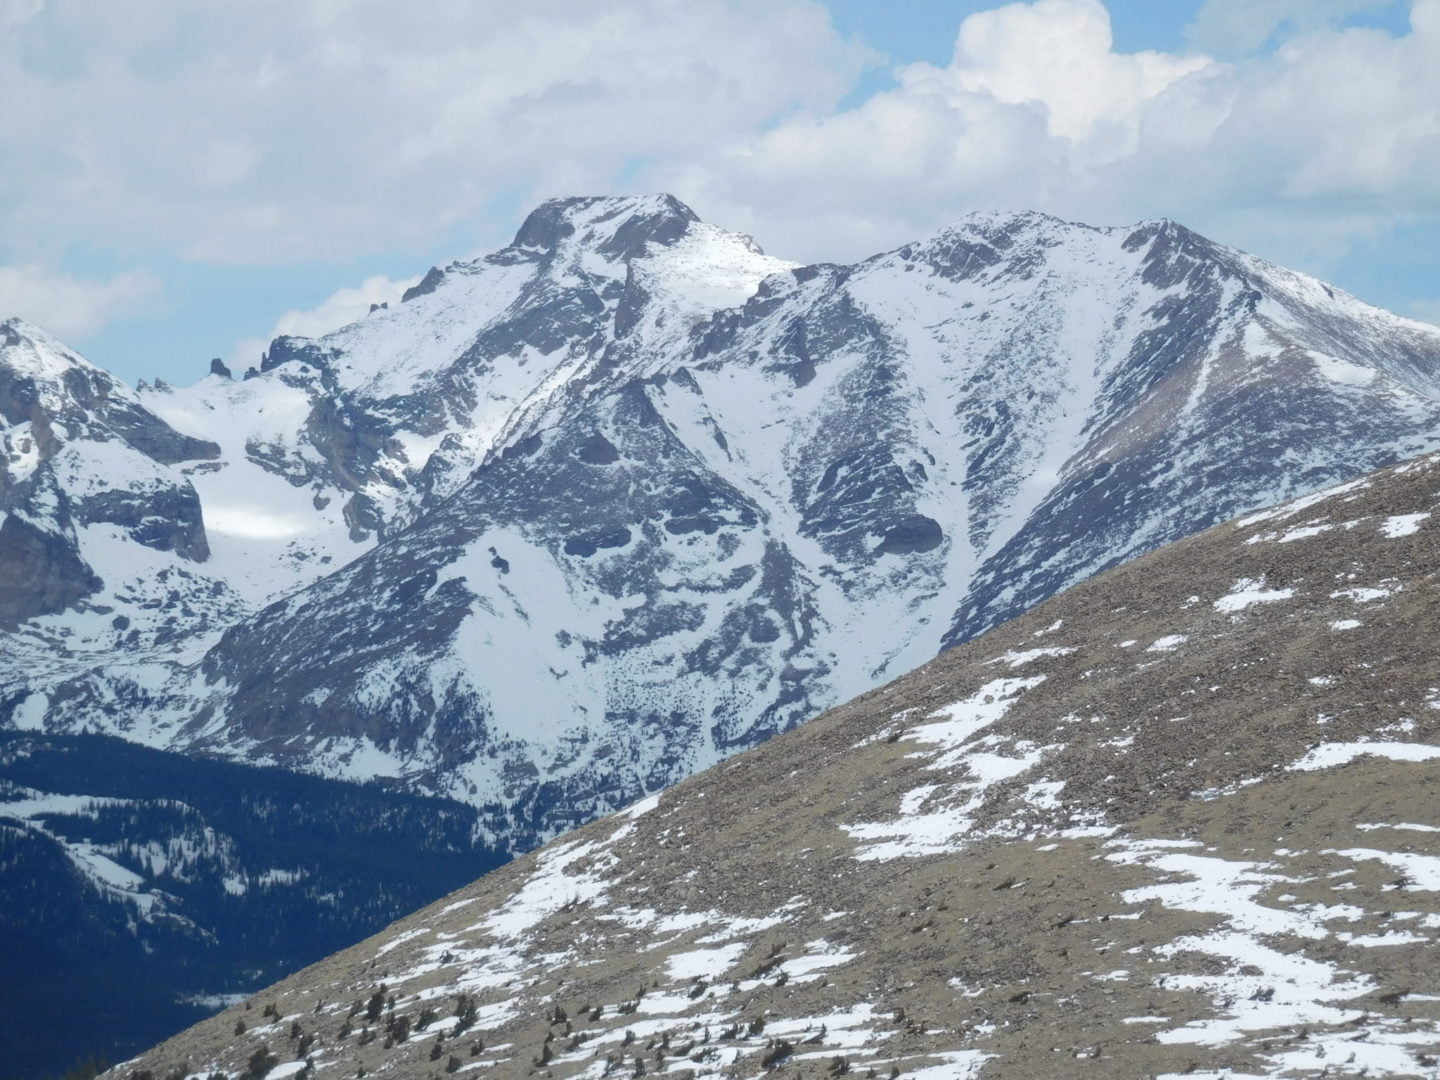 View of Longs Peak